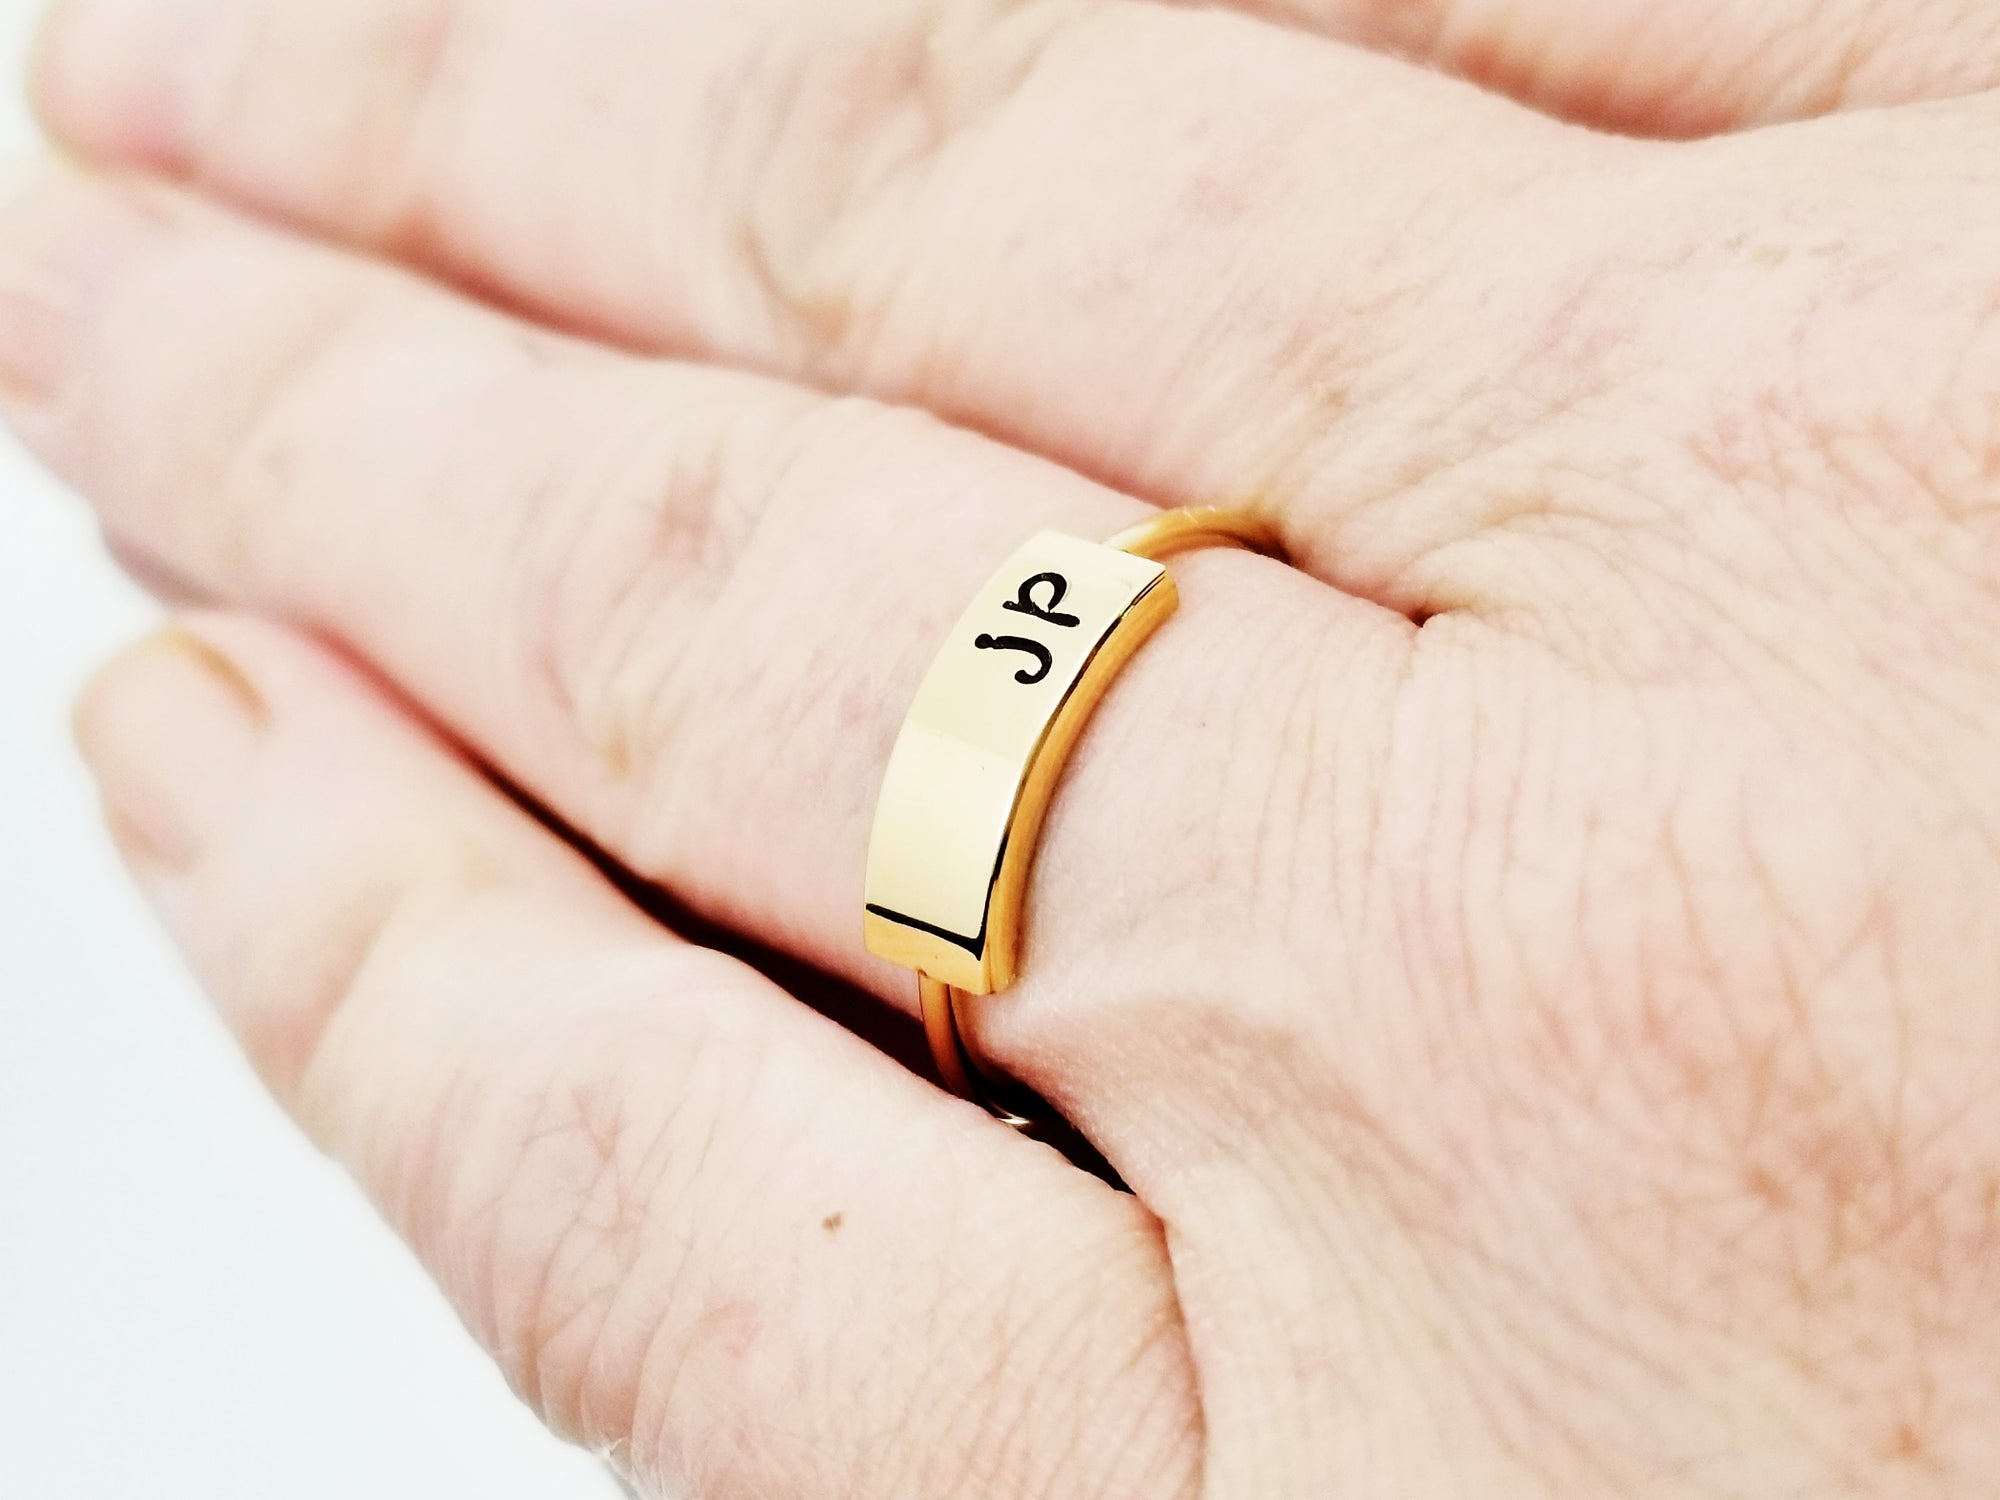 Gold Monogram Initials Signet Ring, Couple Initial Rings, Custom Monogram  Rings, Initials Ring, 2 letter initial rings, Initial Signet ring –  somethinggoldjewelry